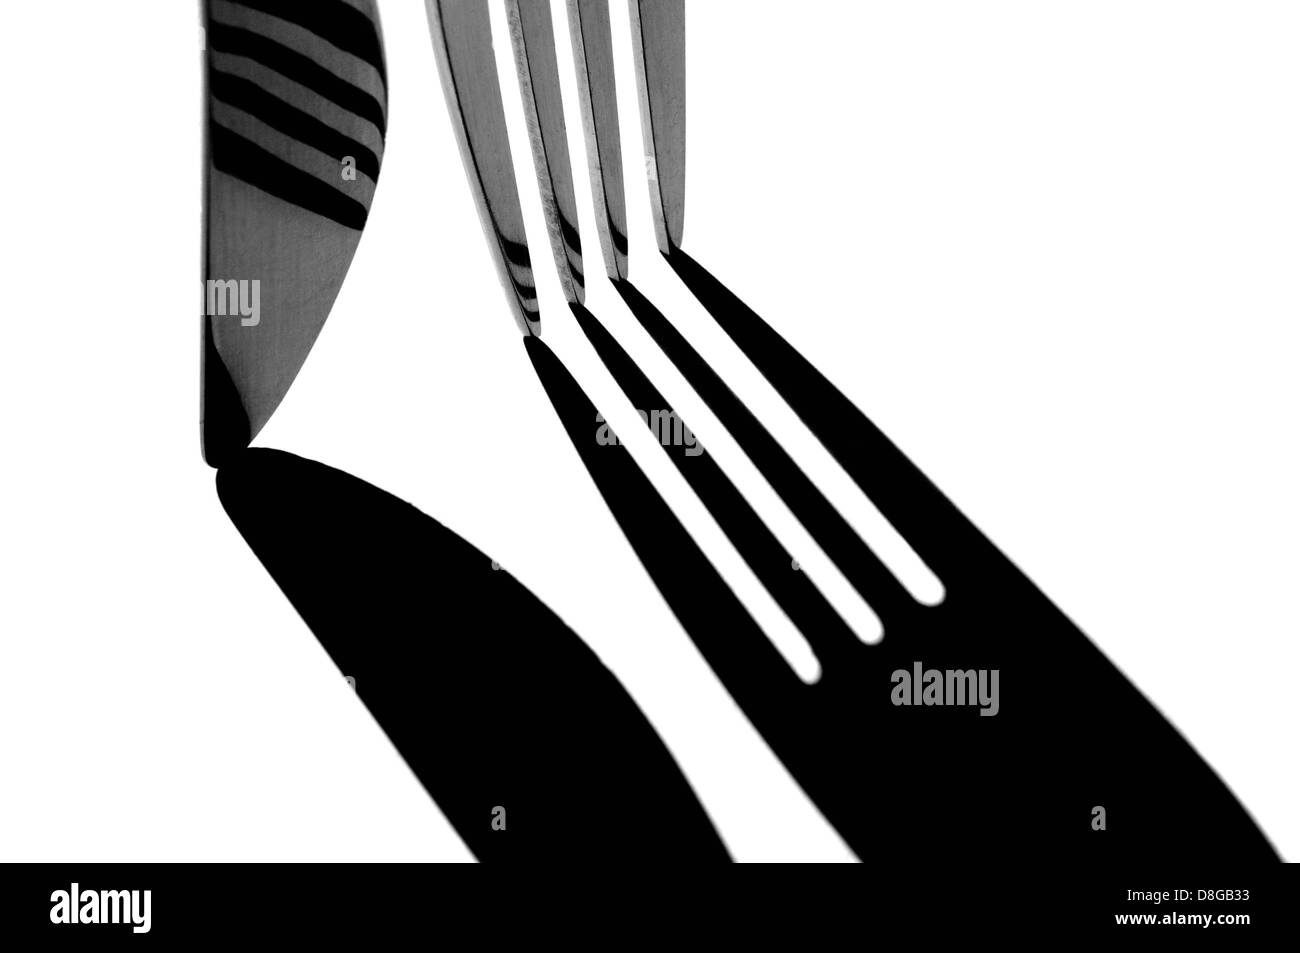 Schwarz / weiß verarbeitet ausgeschnittene Bild von Besteck. Stockfoto